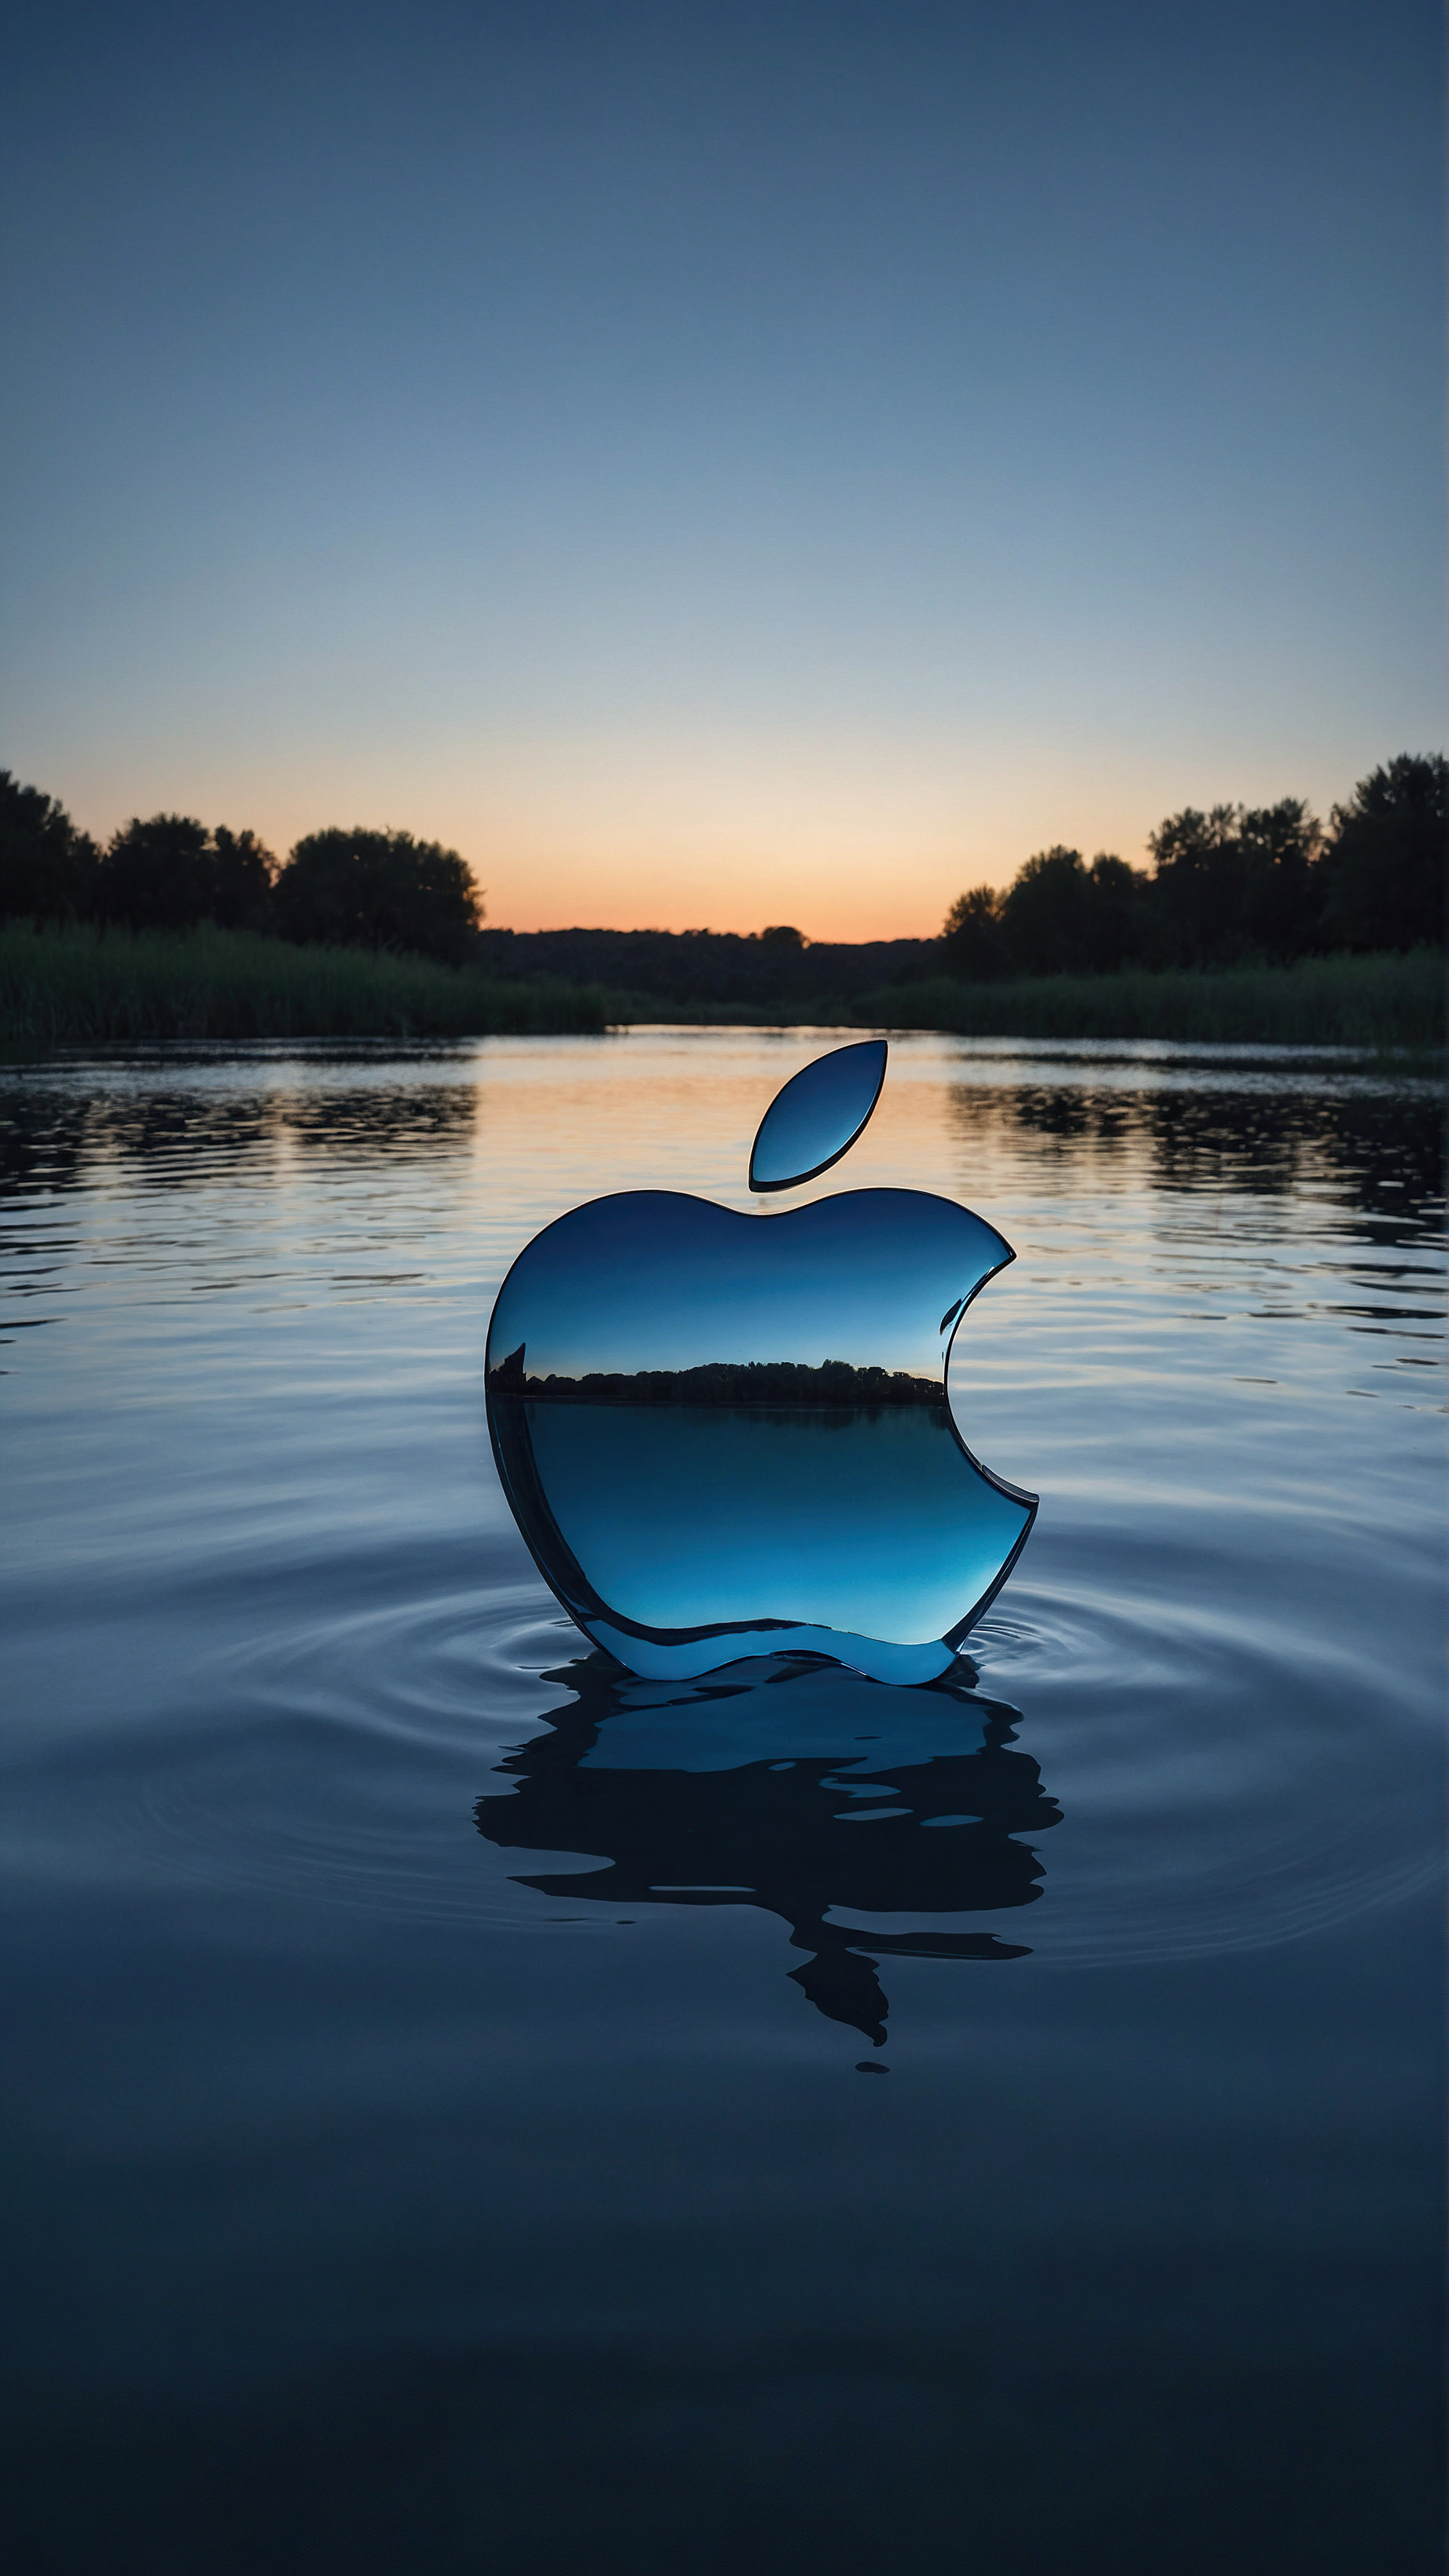 Ornez votre écran avec un arrière-plan en 4K pour iPhone, présentant un paysage serein à l'aube, avec des eaux tranquilles reflétant les teintes douces du ciel et un logo Apple emblématique brillant semblant flotter au-dessus de la surface de l'eau.